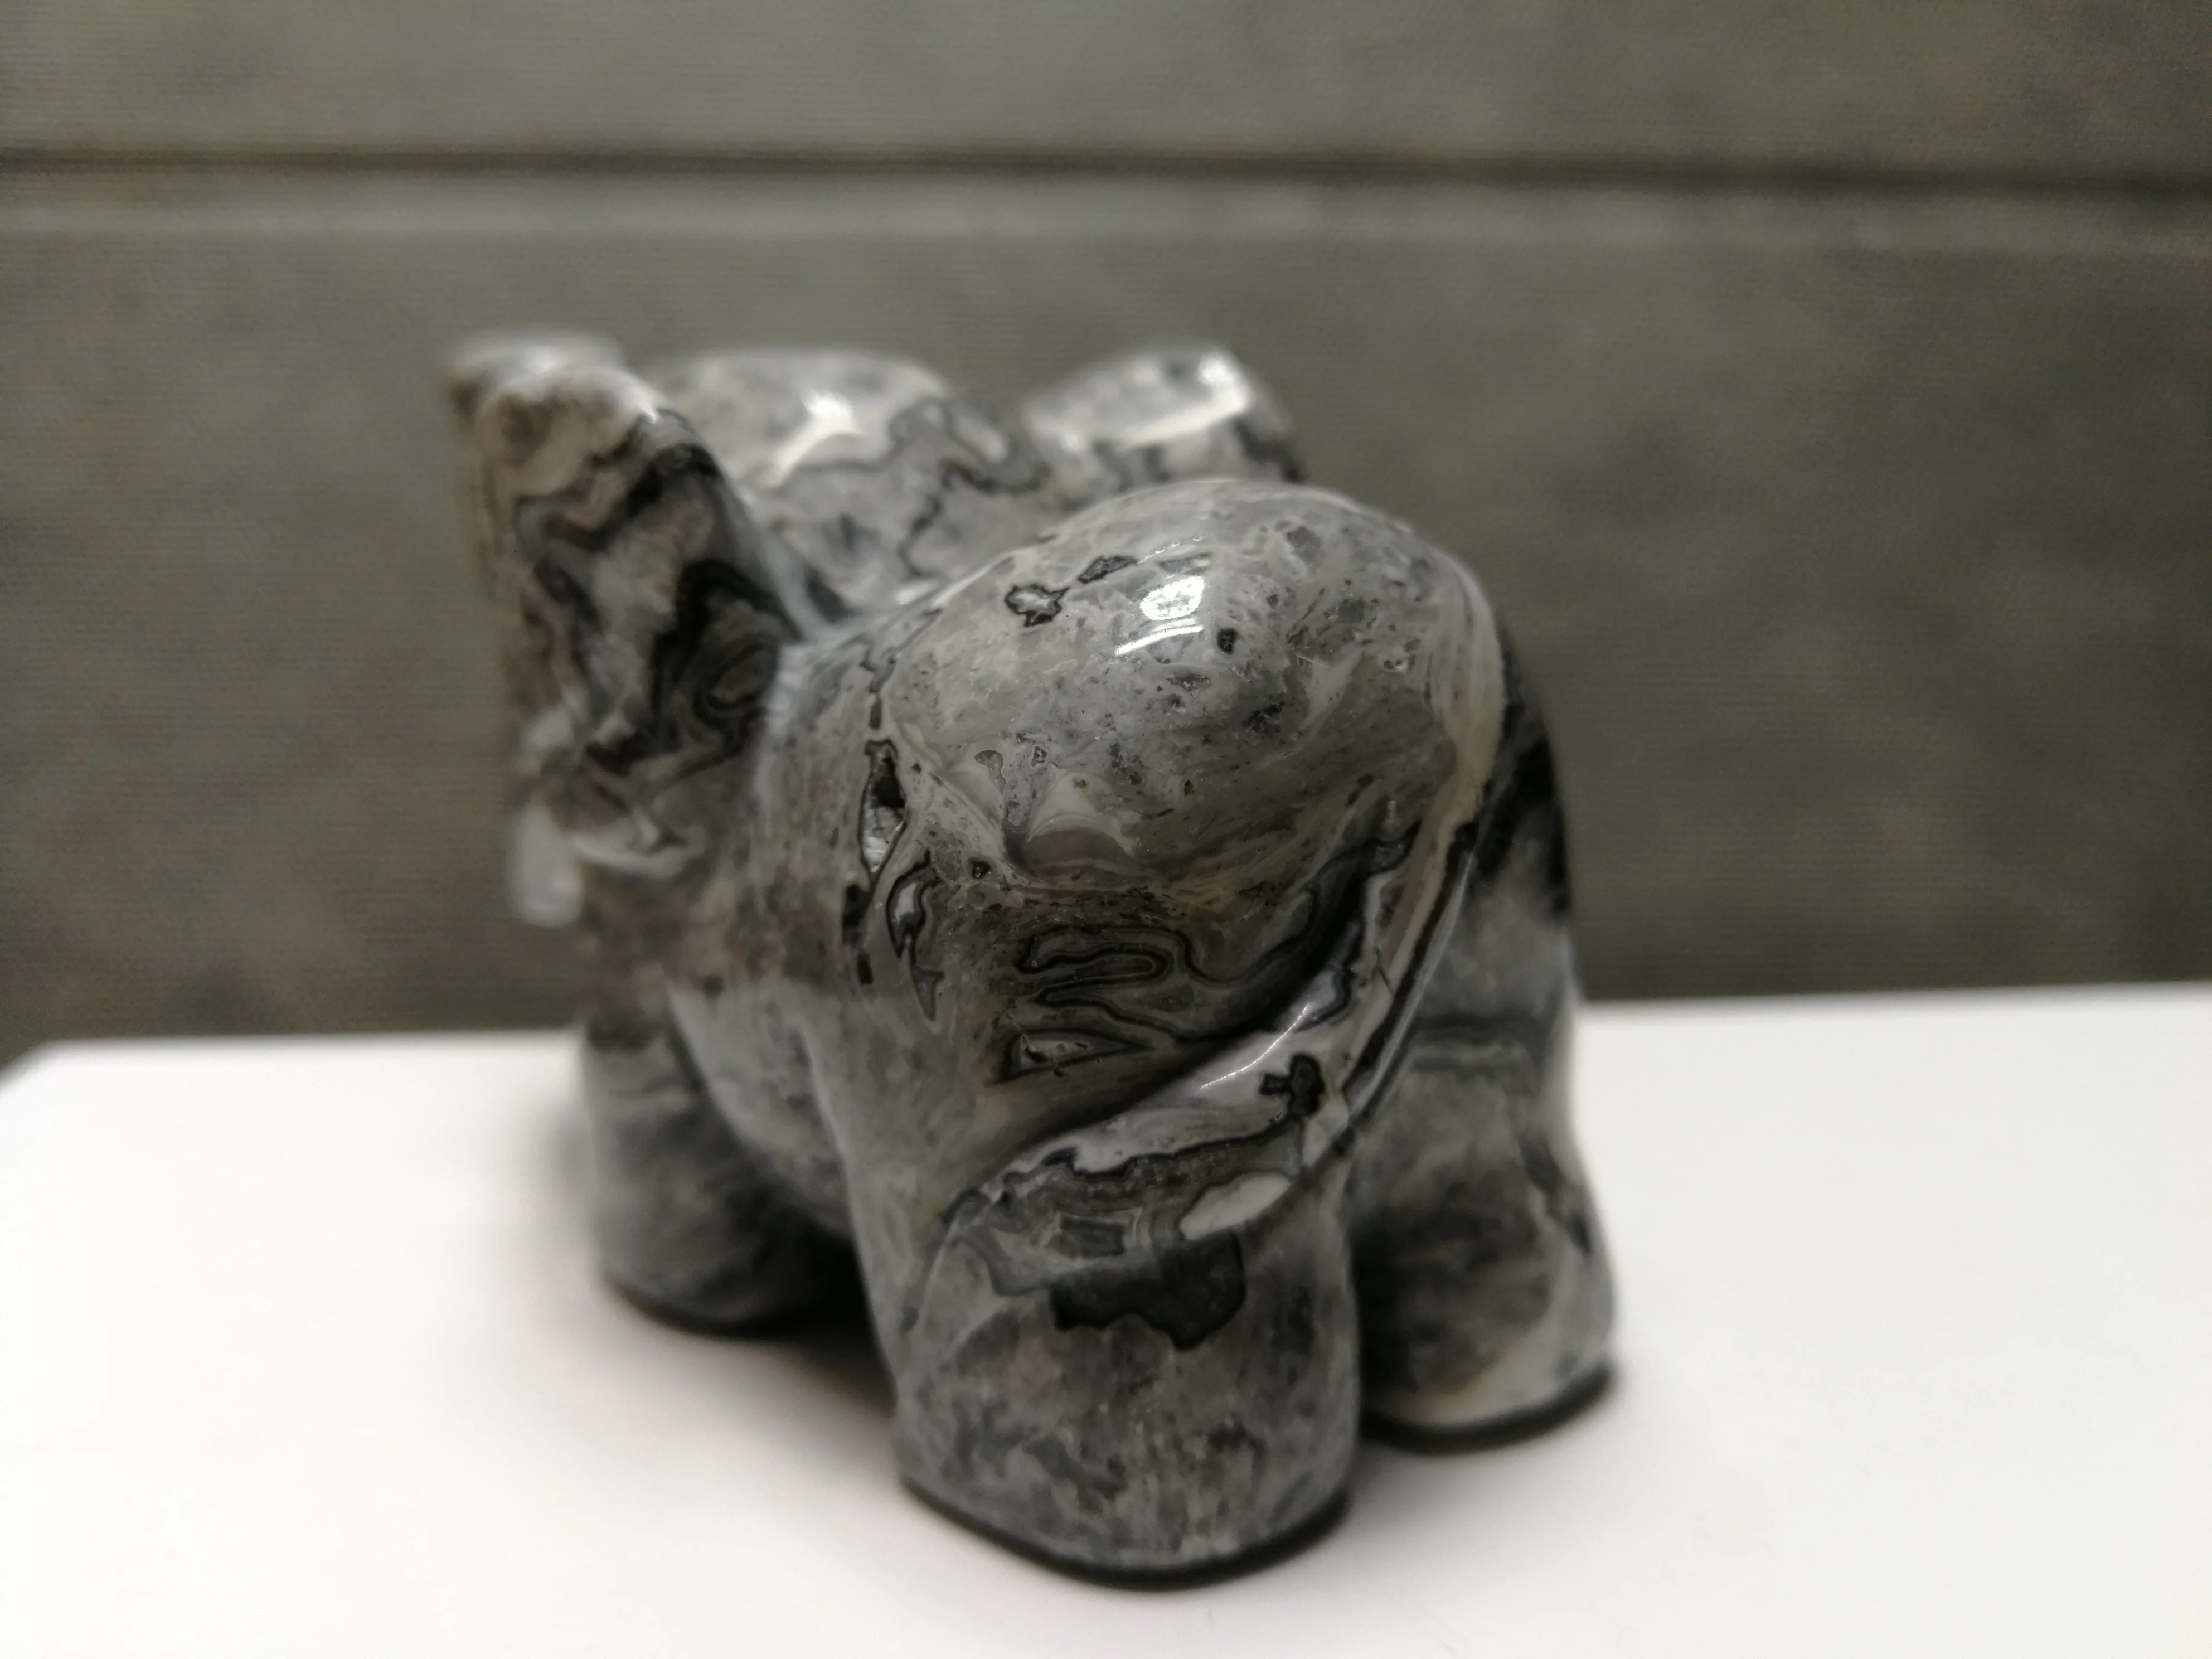 219,2 gNatural серый камень "Зебра", выгравированный вручную слонов, исцеление --- подача заявки на 10 от AliExpress WW